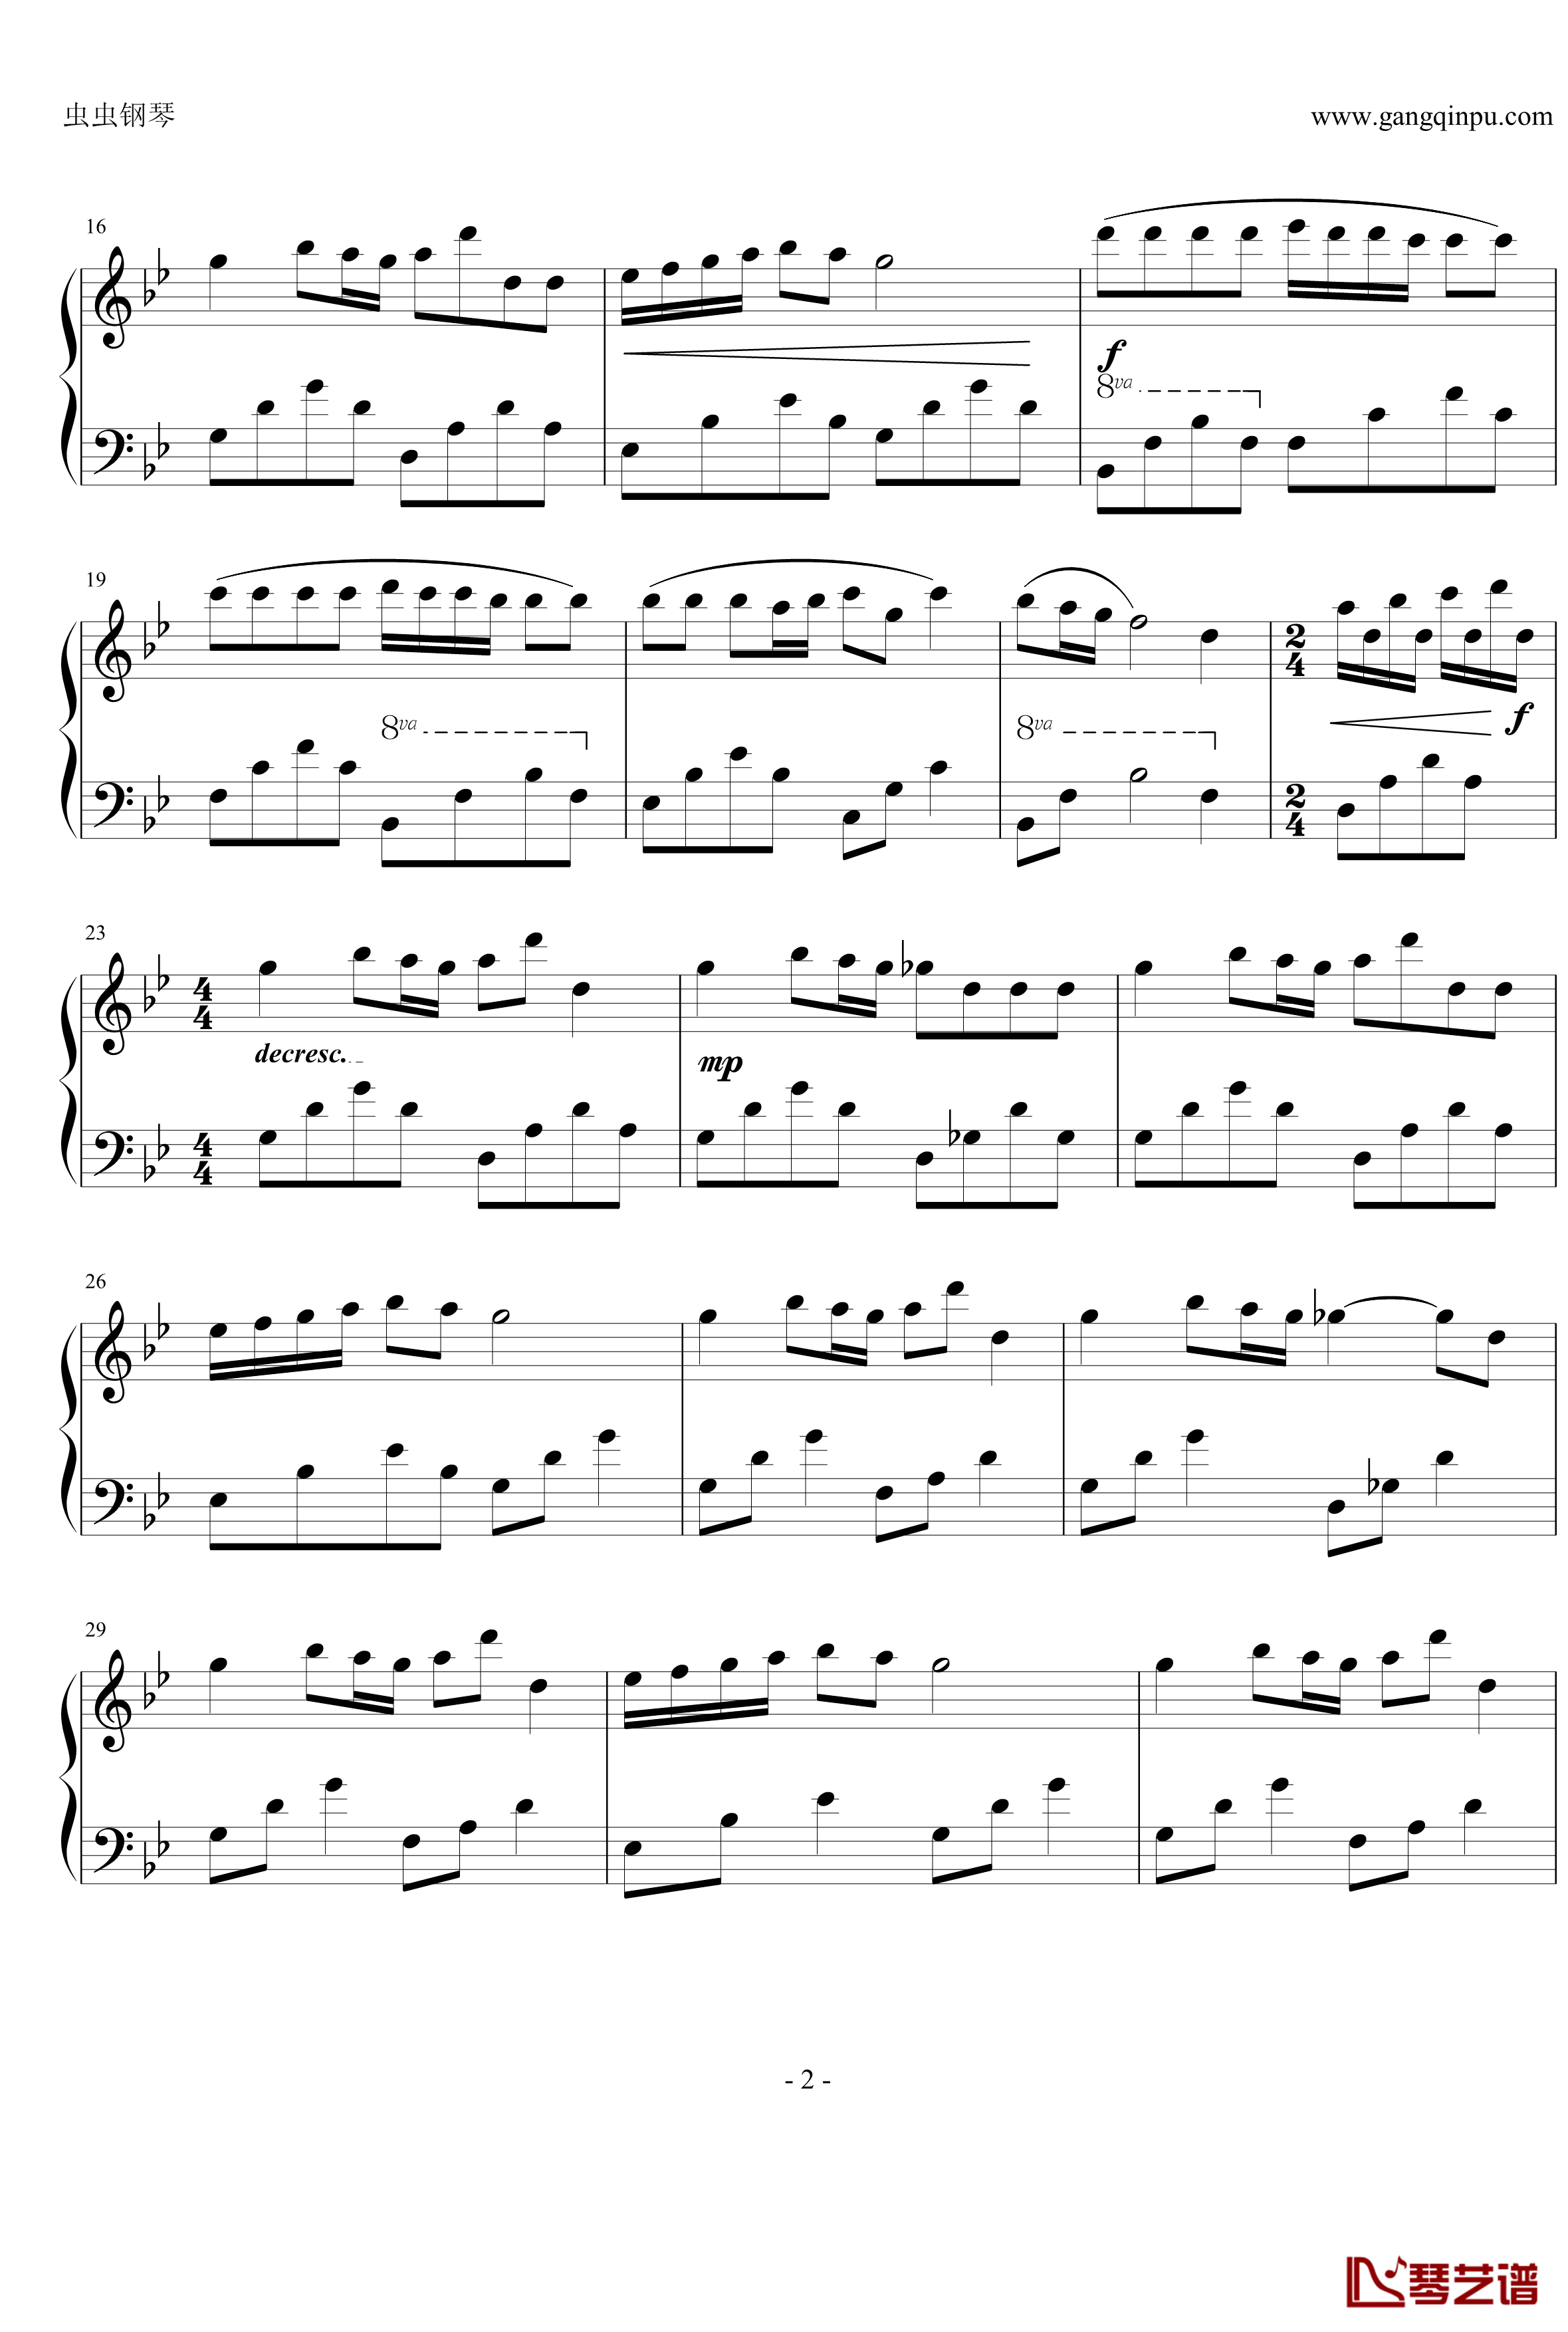 娜乌丝卡的安魂曲钢琴谱-简单版-久石让2